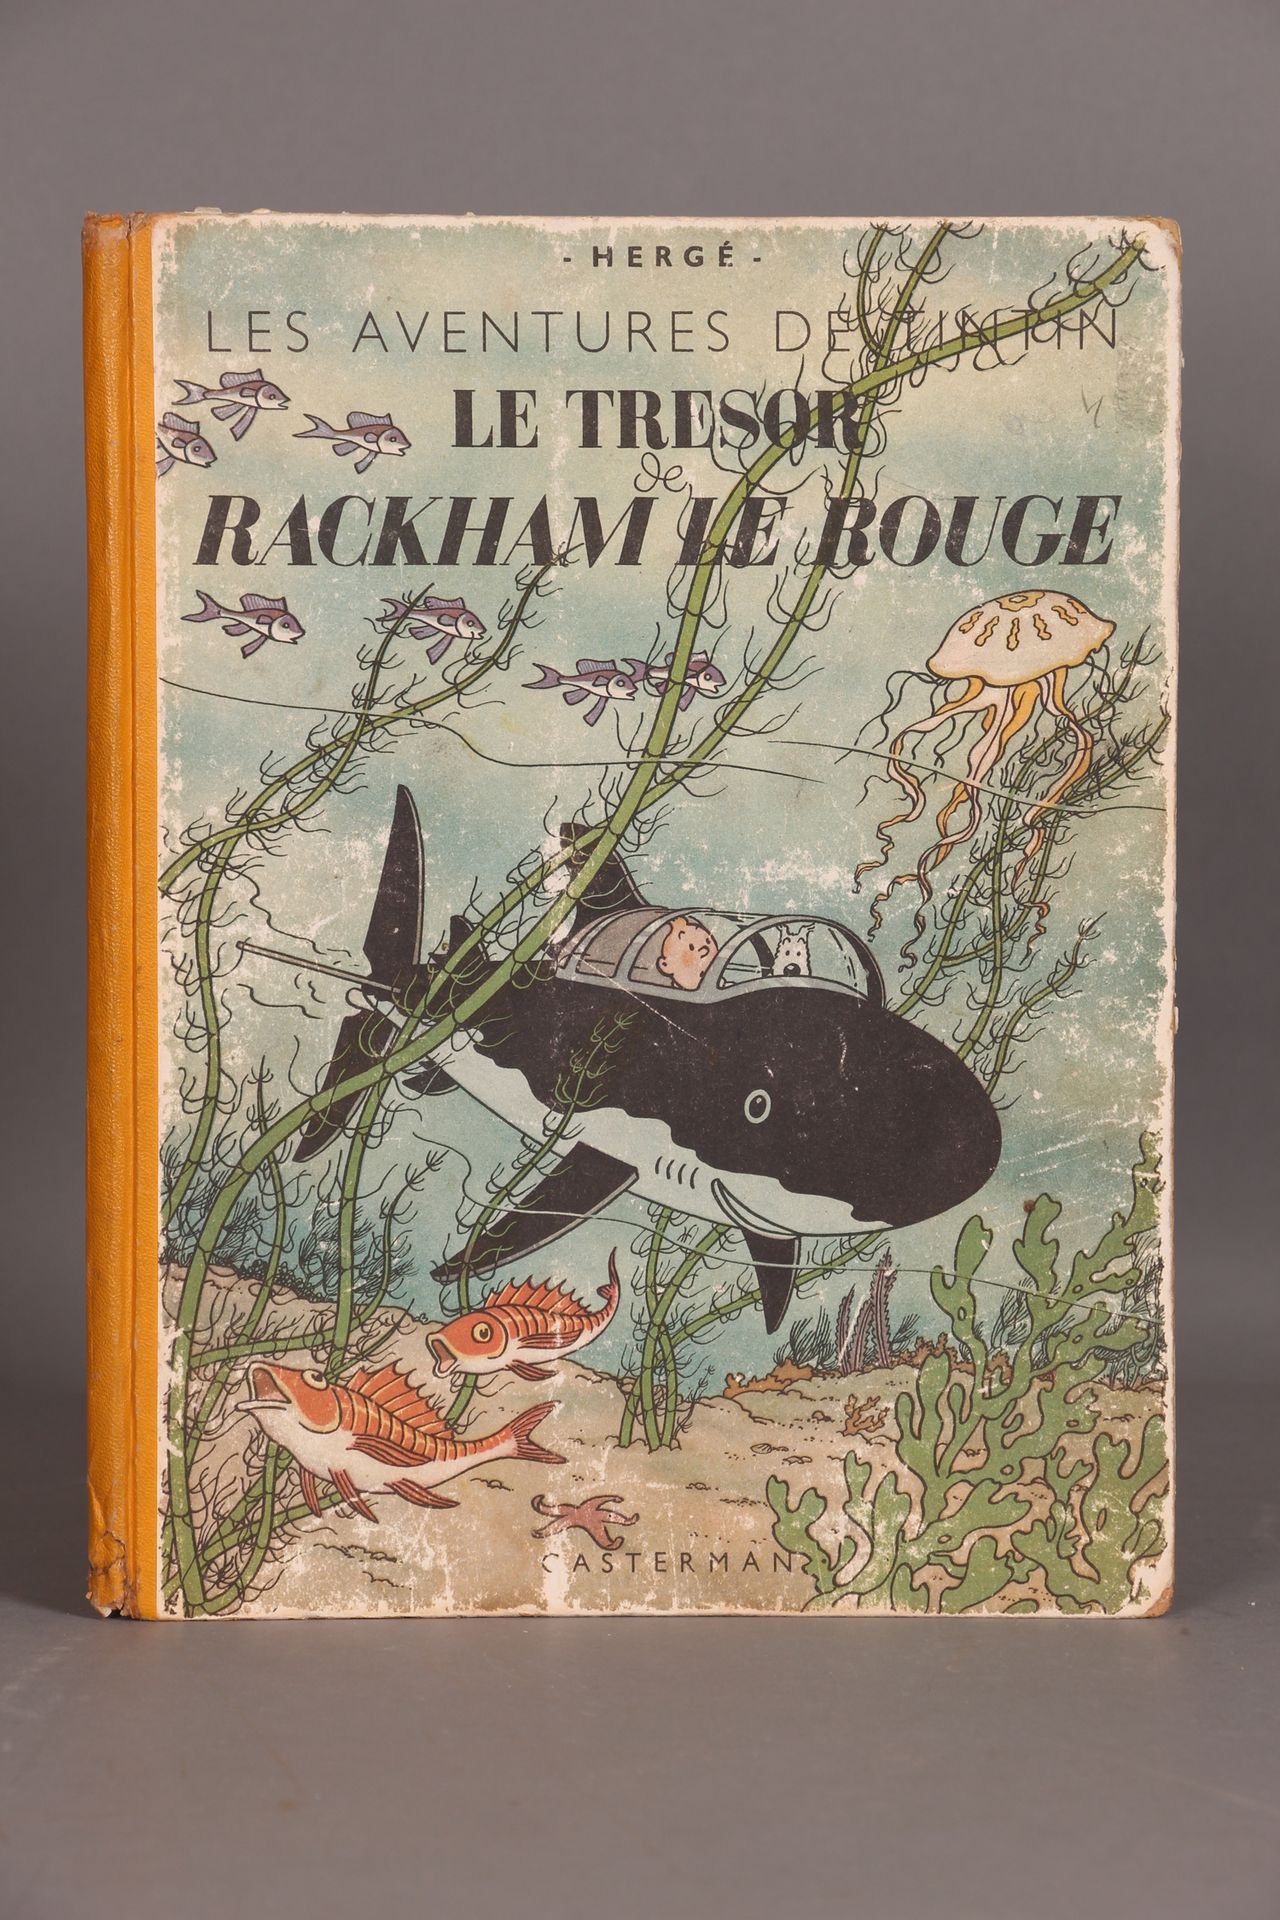 [TINTIN]. HERGÉ. "Le trésor de Rackham le rouge" Casterman，1945 年。第一版。黄色书脊，第 2 版&hellip;